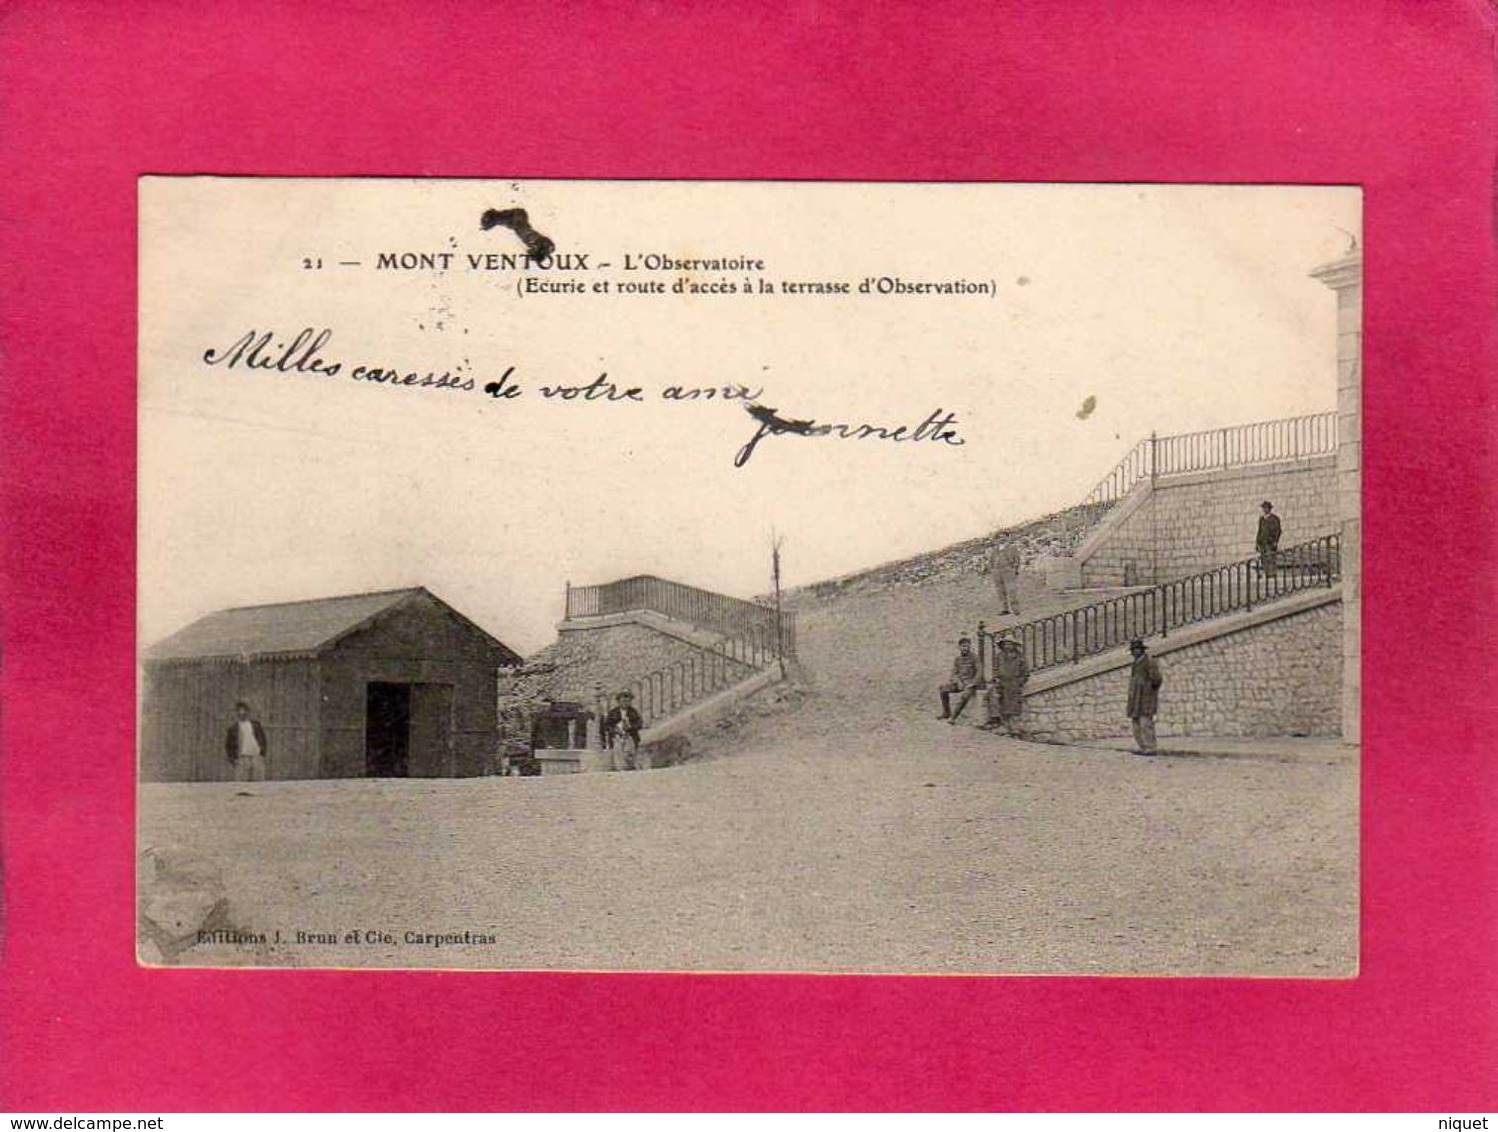 84 Vaucluse, Mont Ventoux, L'Observatoire, Ecurie Et Route D'Accés, 1904, (J. Brun) - Beaumes De Venise